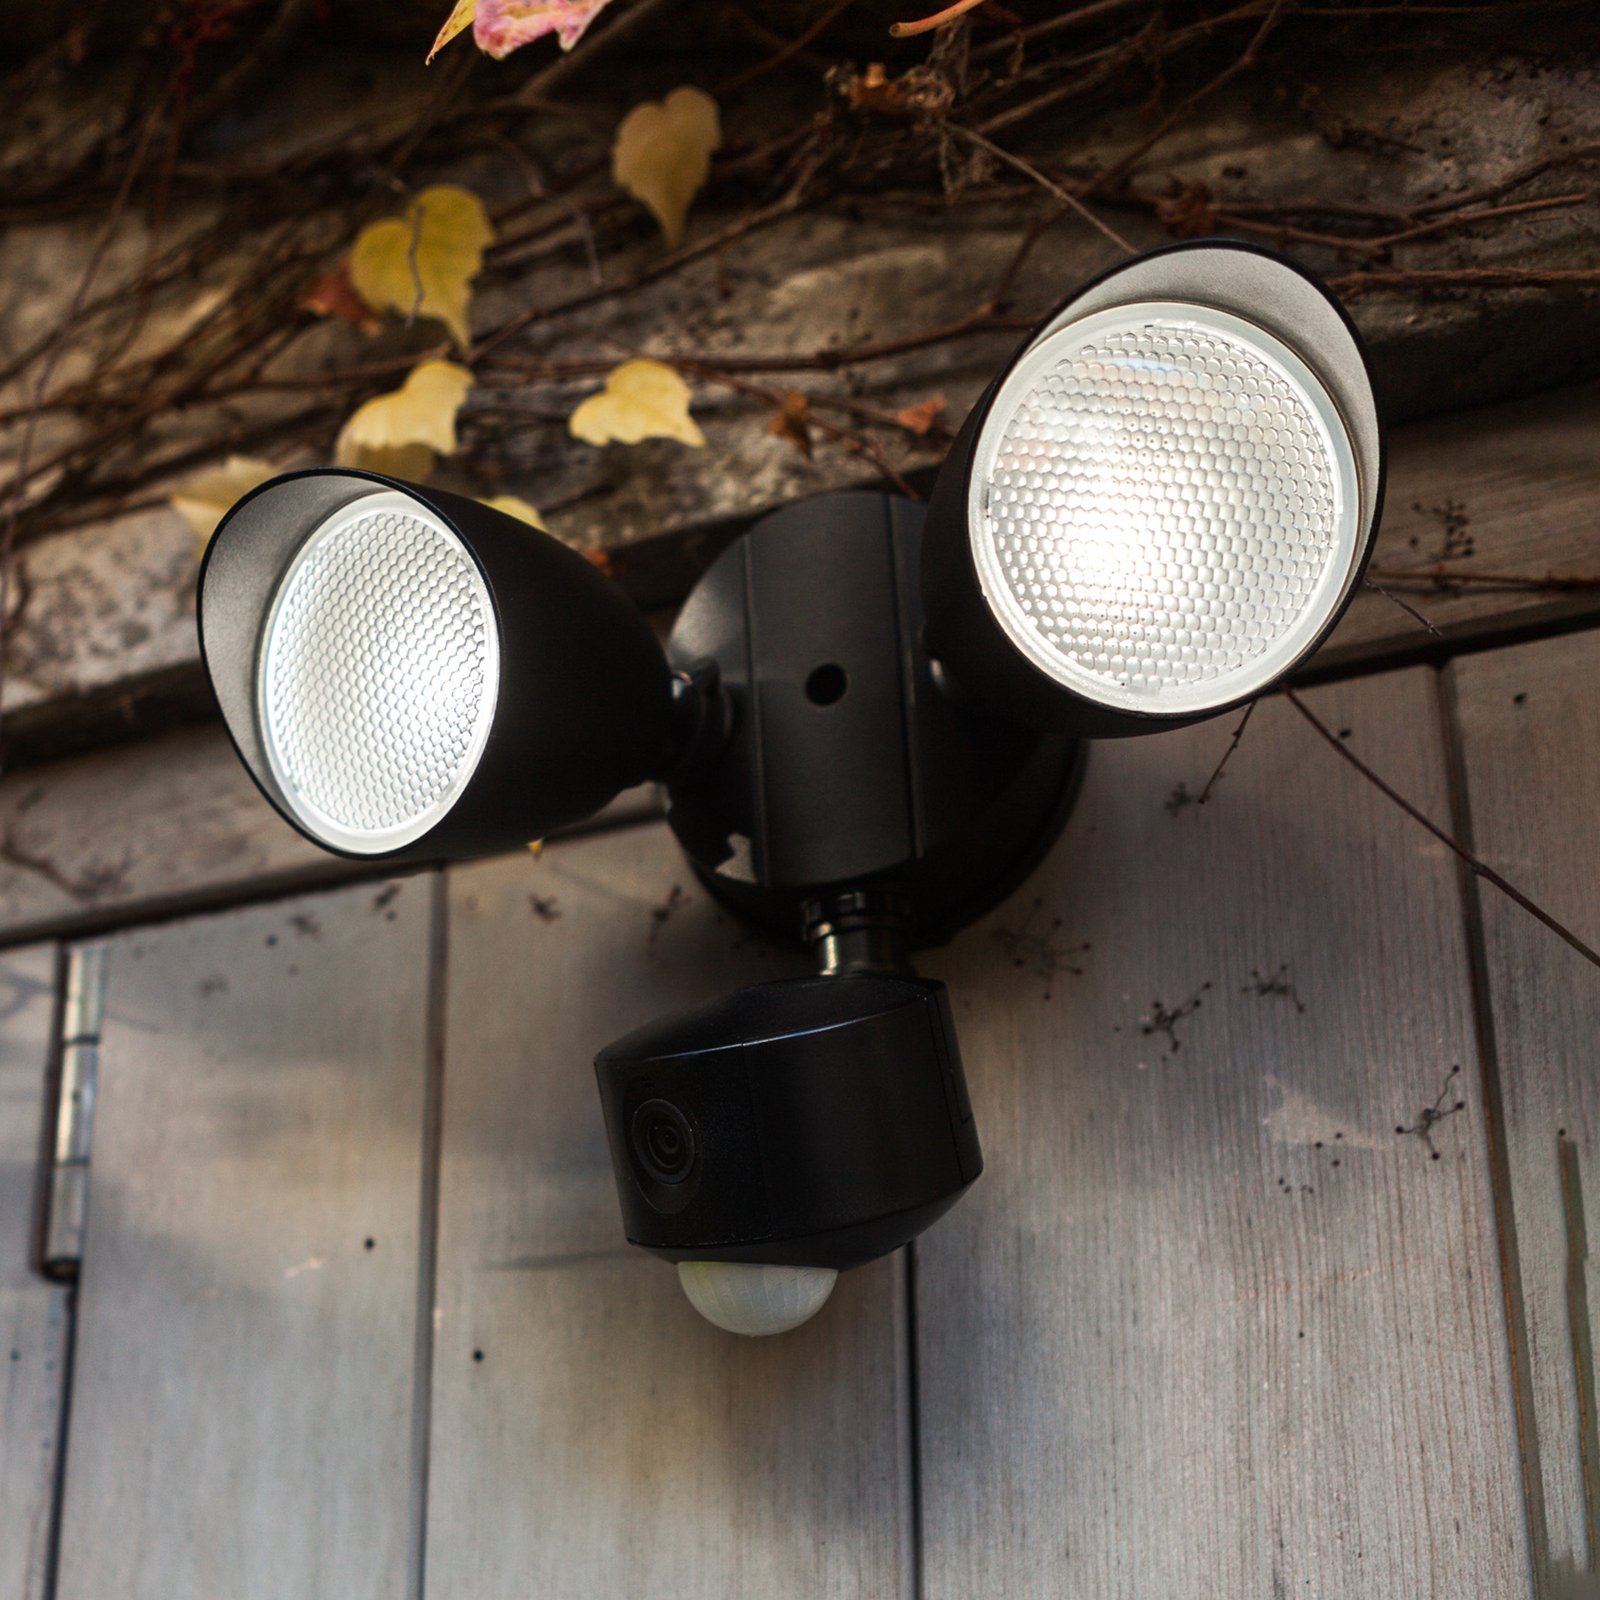 Draco LED outdoor wall light camera sensor